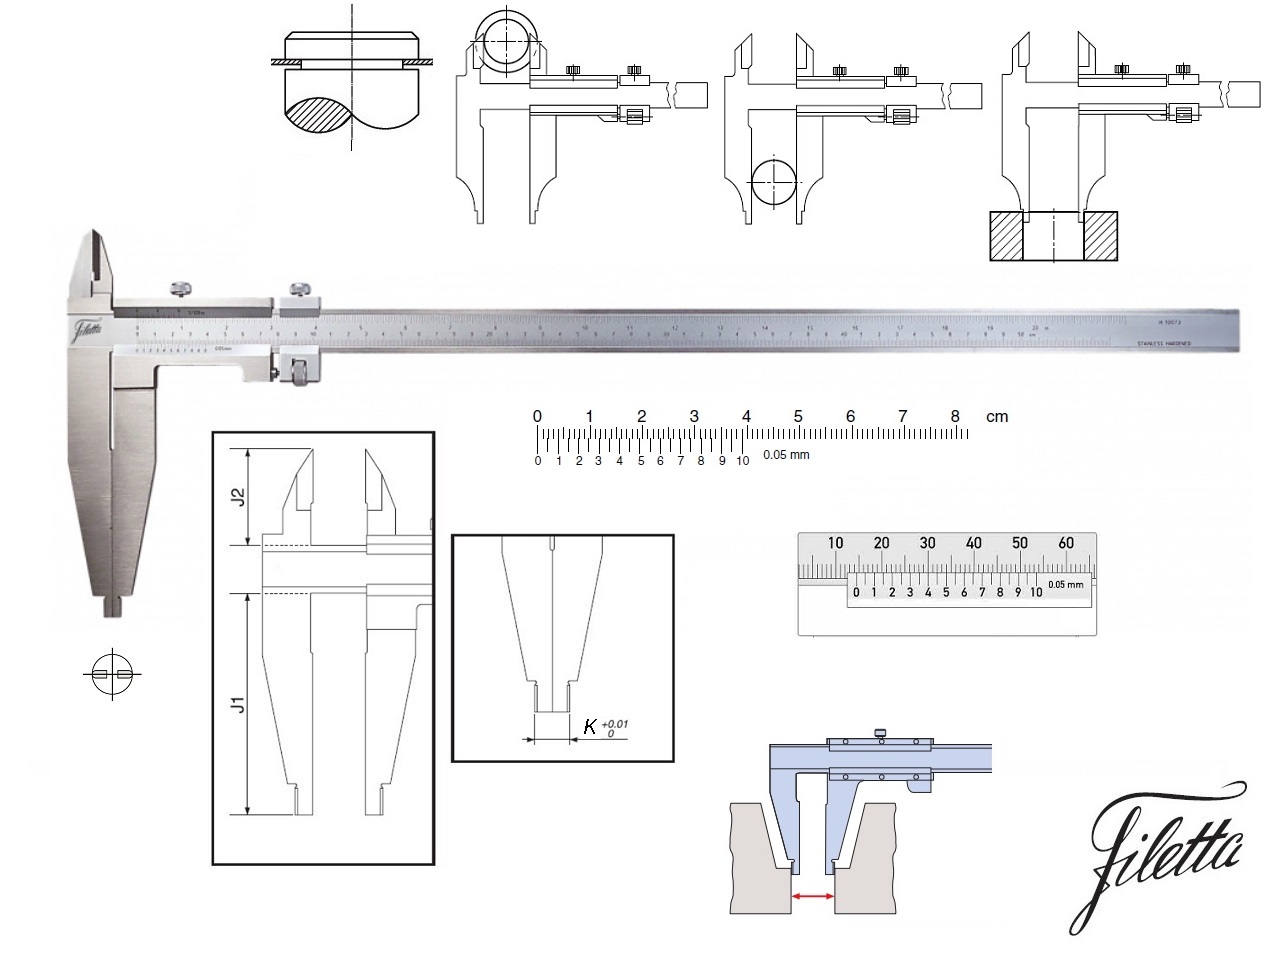 Posuvné měřítko Filetta 0-600 mm, čelisti 150 mm, s měřicími nožíky pro vnější měření